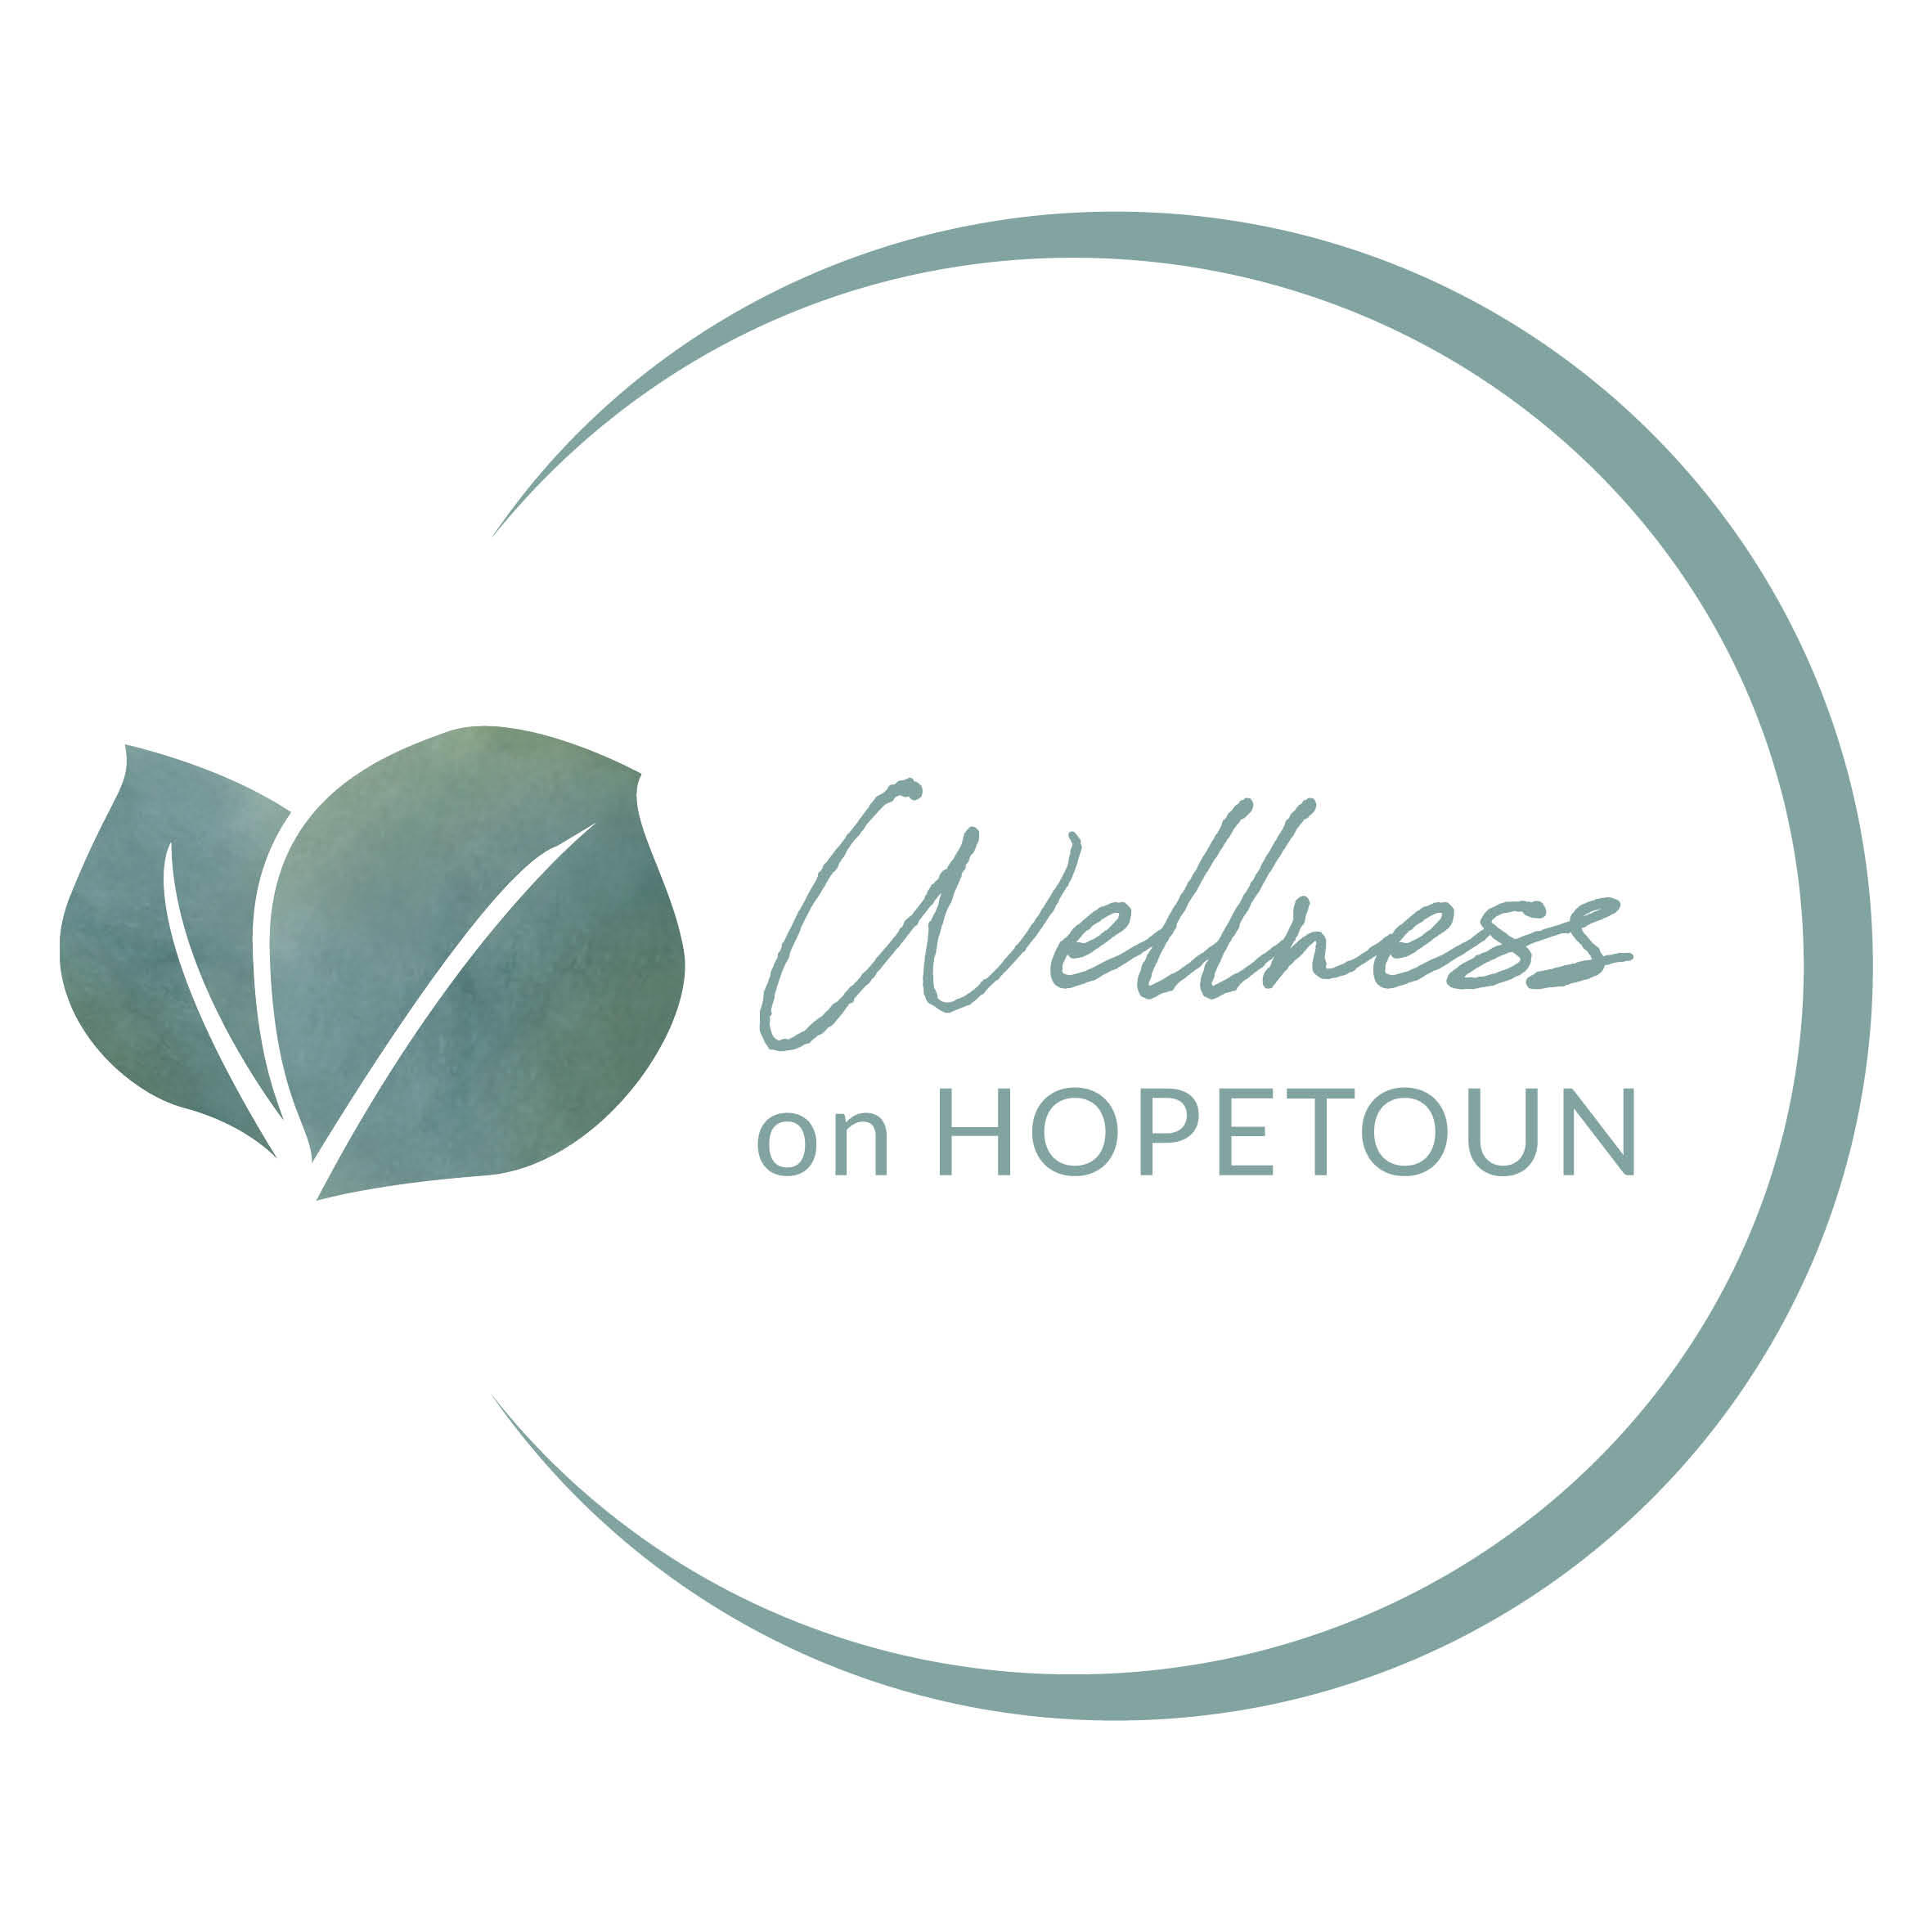 Wellness on Hopetoun Maroondah